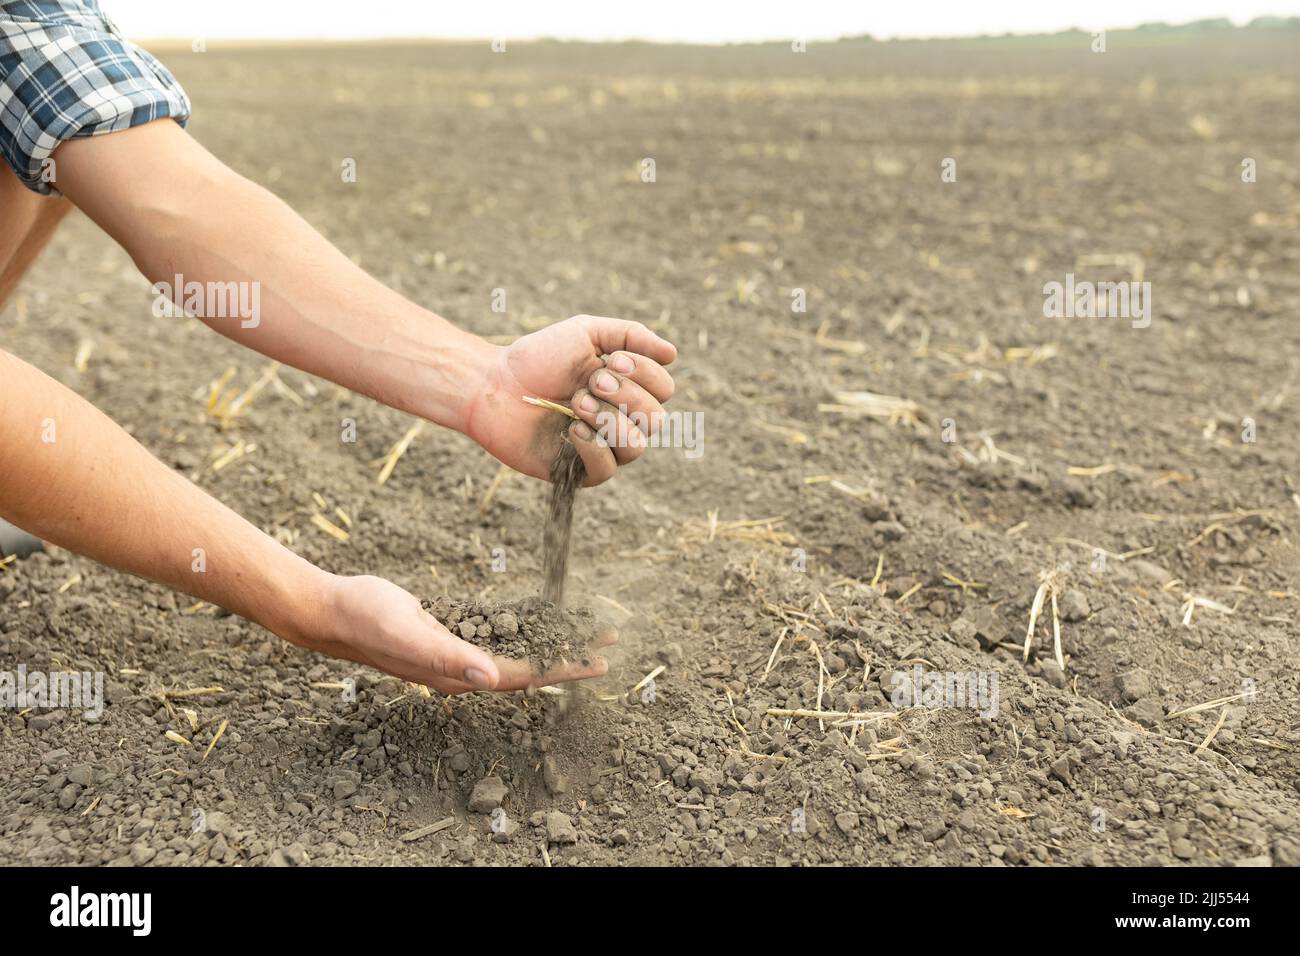 Les mains de l'agriculteur tiennent une poignée de terre fertile et la versent dans l'autre main. Le concept de l'agriculture, de l'agroalimentaire. Le jardinier tient fertil Banque D'Images